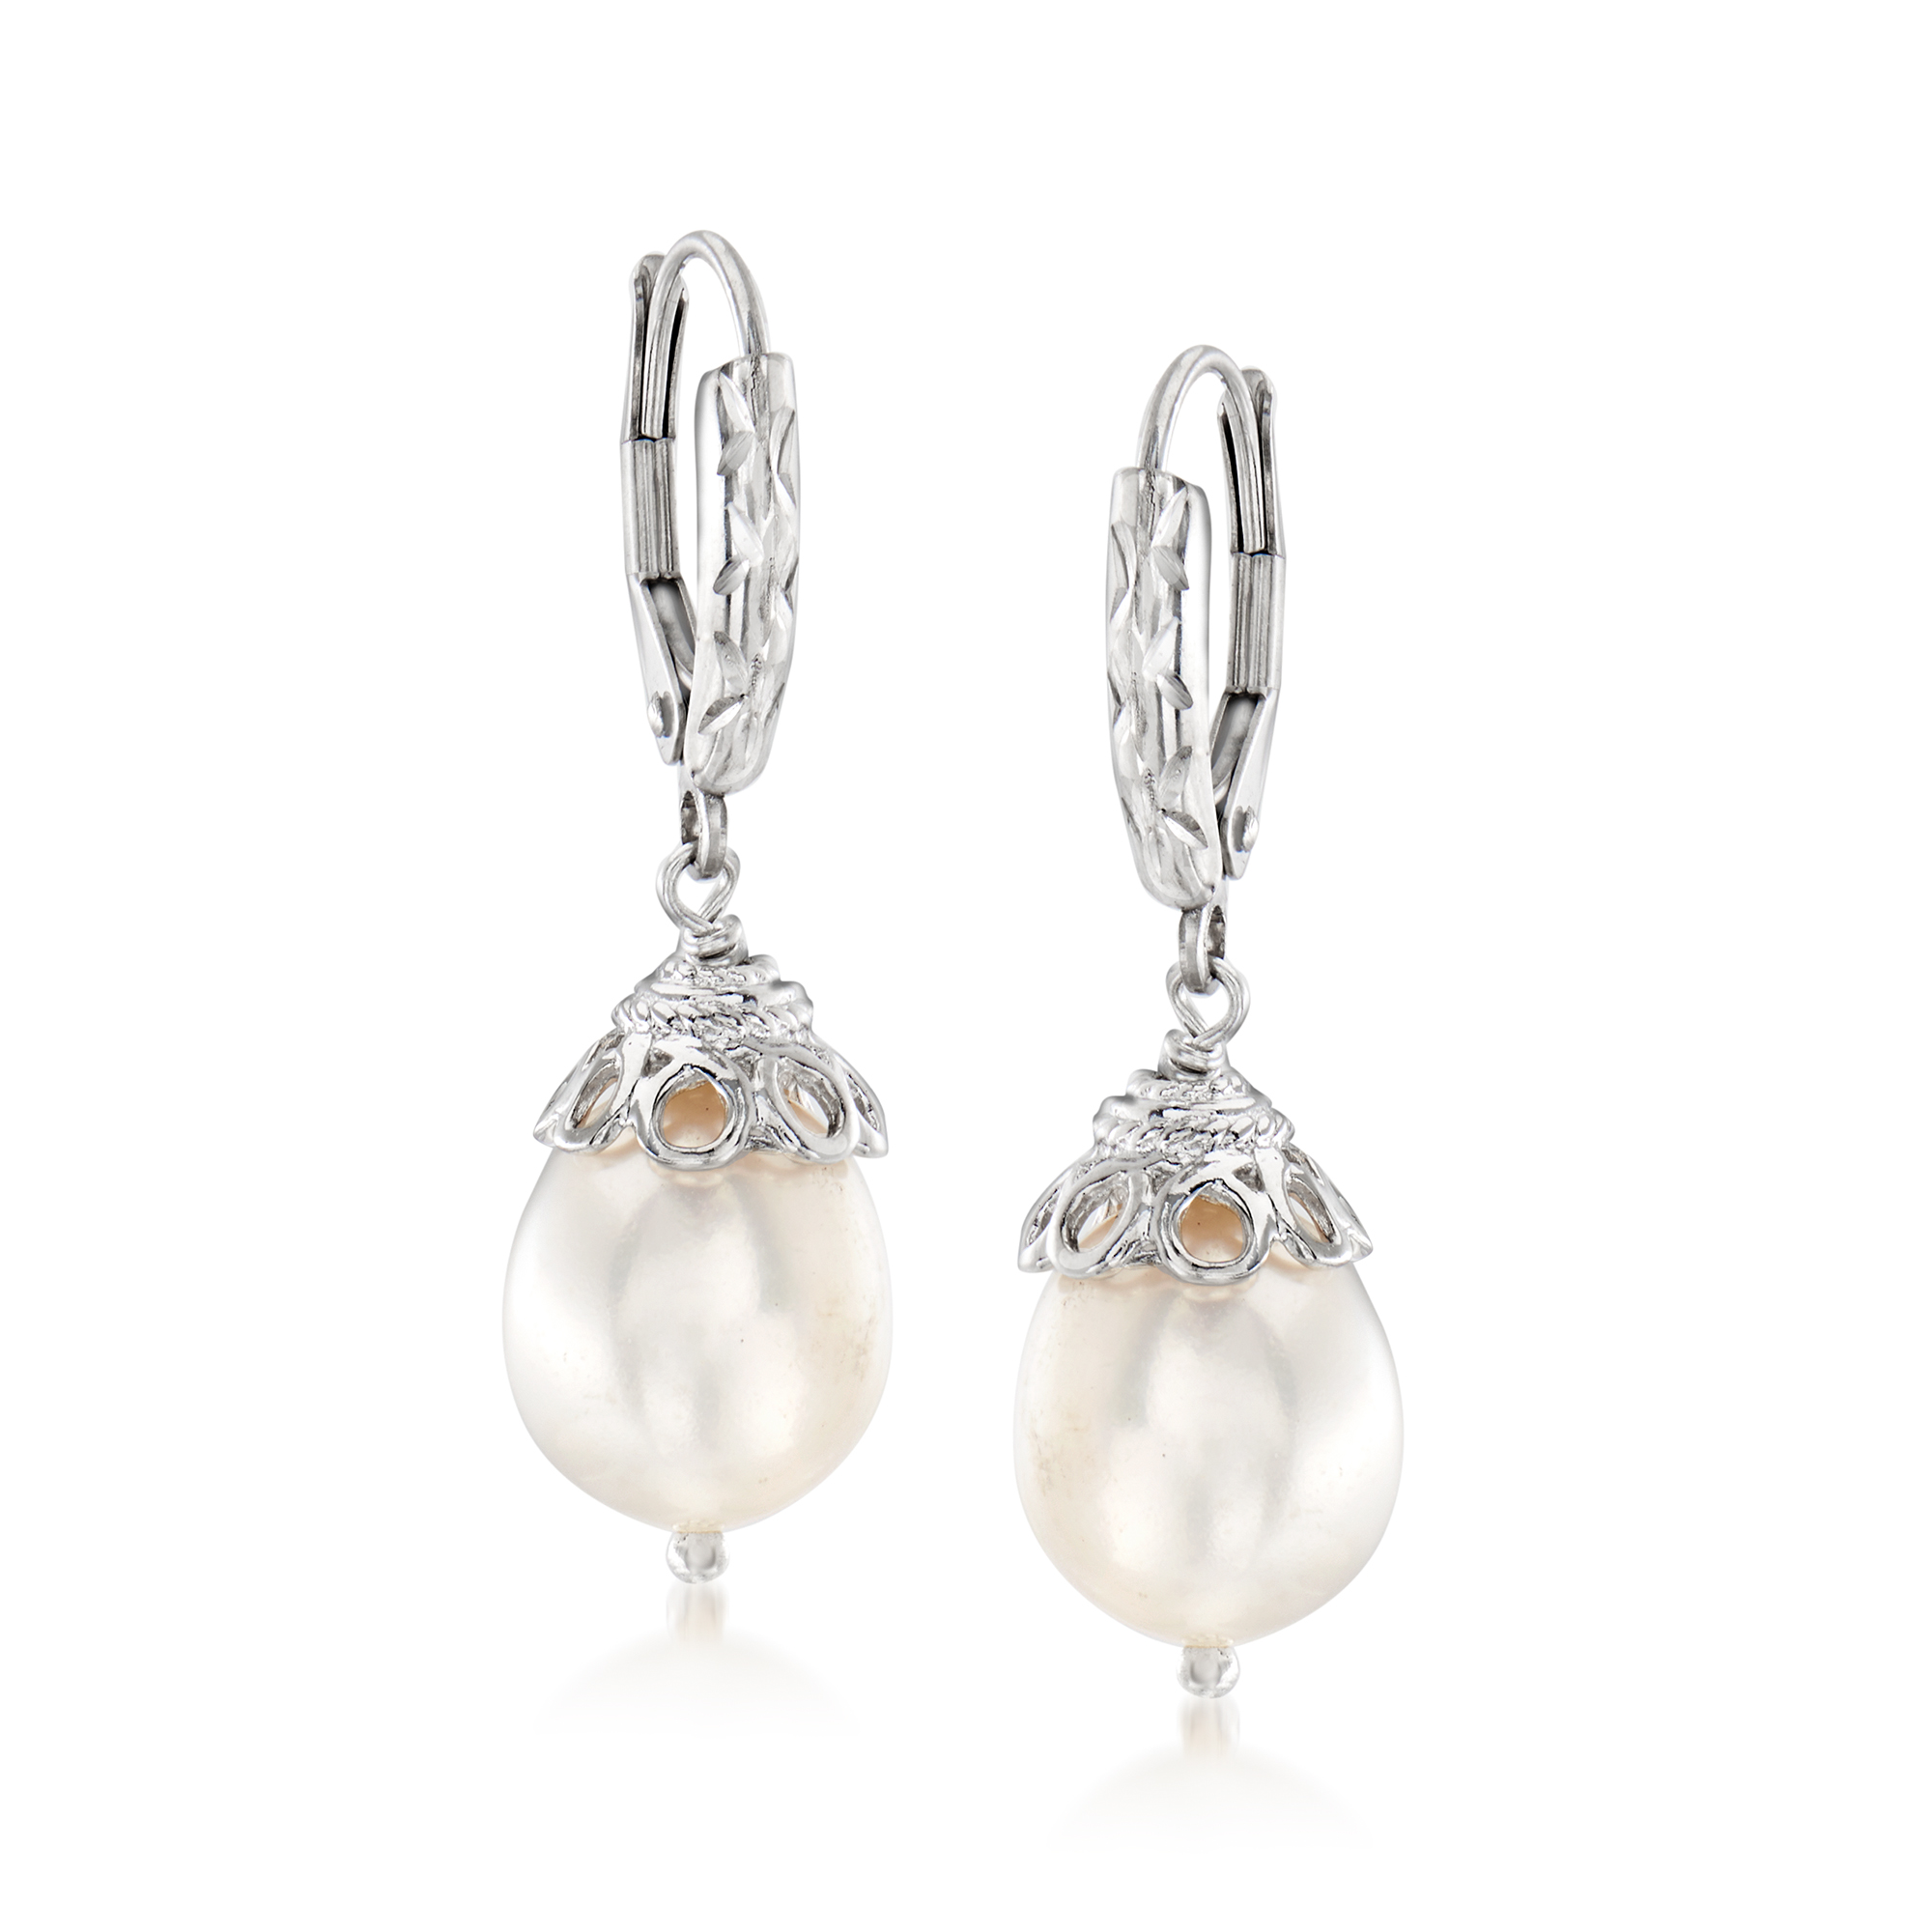 Pearl Drop Earrings Sterling Silver Cultured Freshwater Pearls Wedding Bridal